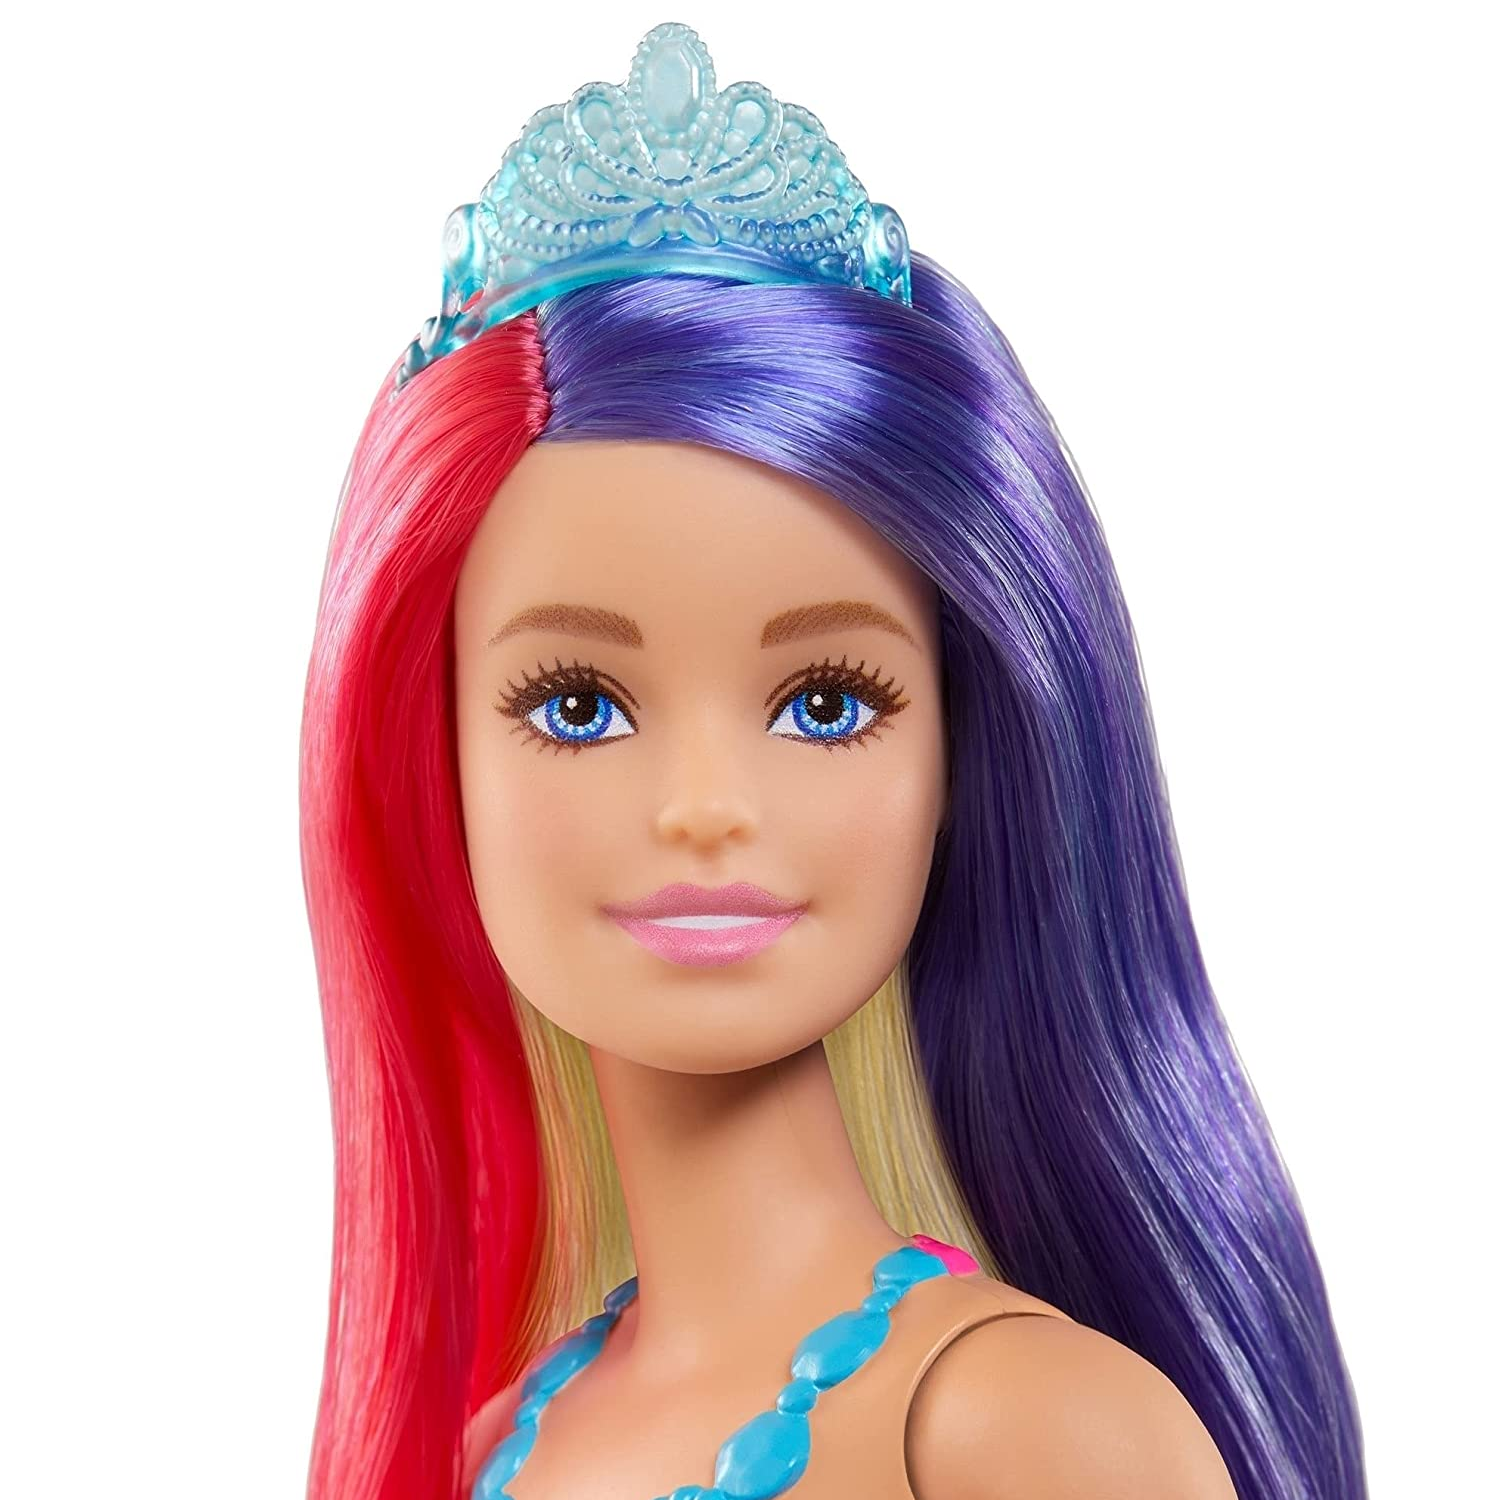 Bonecas Da Barbie Para Fazer Penteados Com Acessórios Cabelo